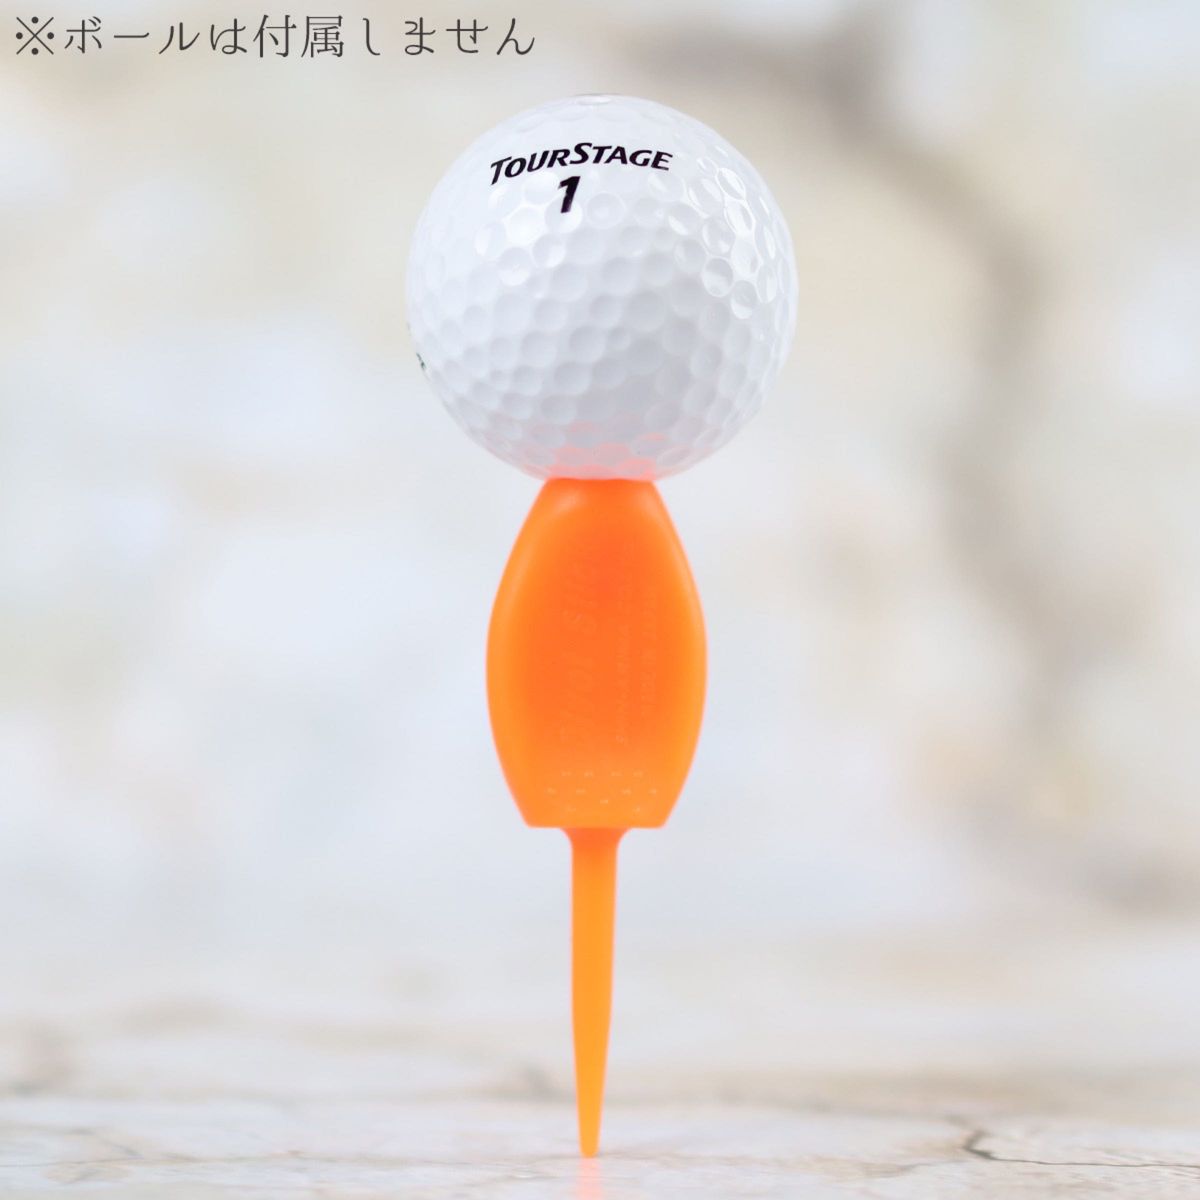 5本セット パリティー 蛍光色 オレンジ色 ゴルフボール 跡 マーク ゴルフティー ティーペグ グリーンフォーク b098o